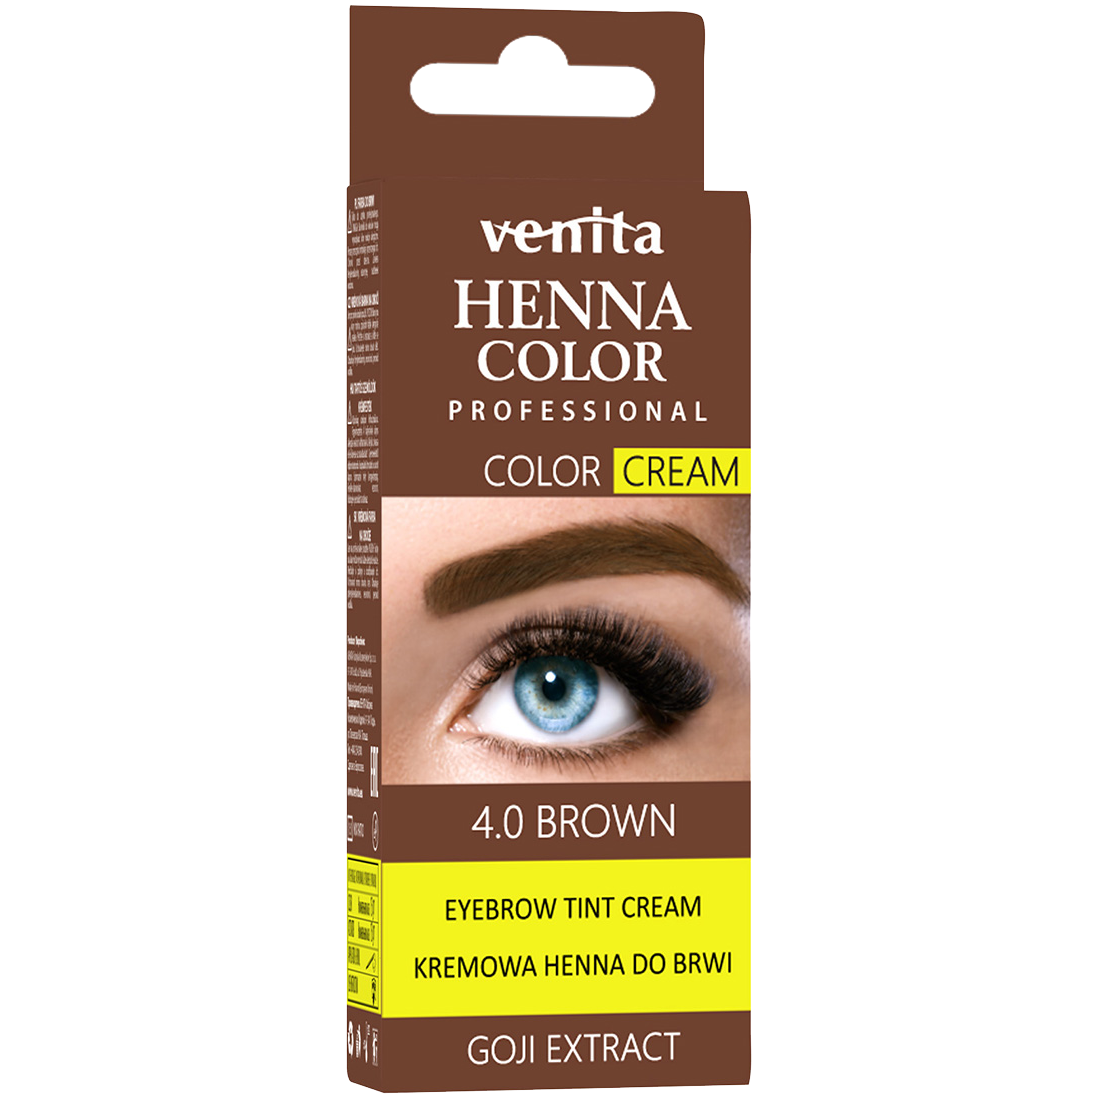 Крем-хна для бровей Venita Henna Color, 15 гр